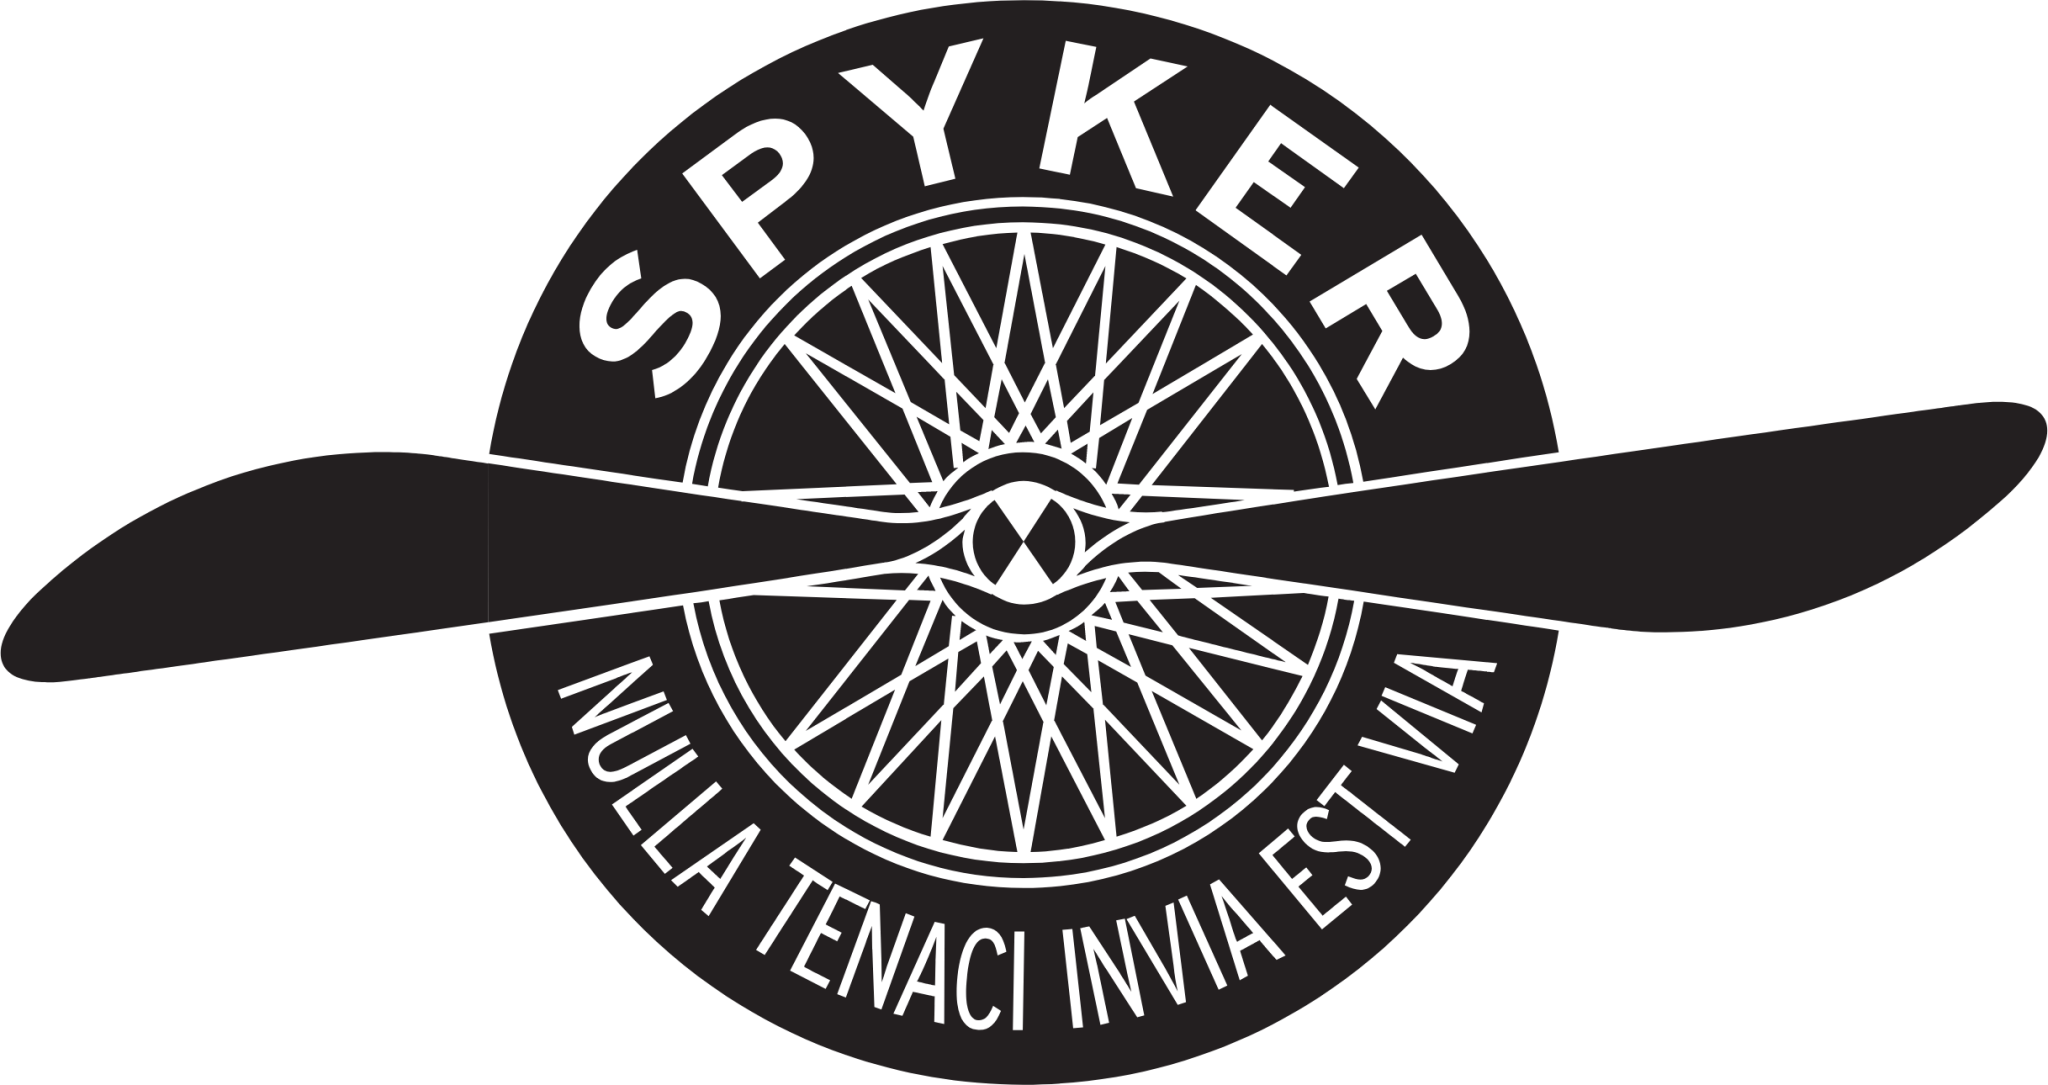 Update more than 141 spyker logo - camera.edu.vn